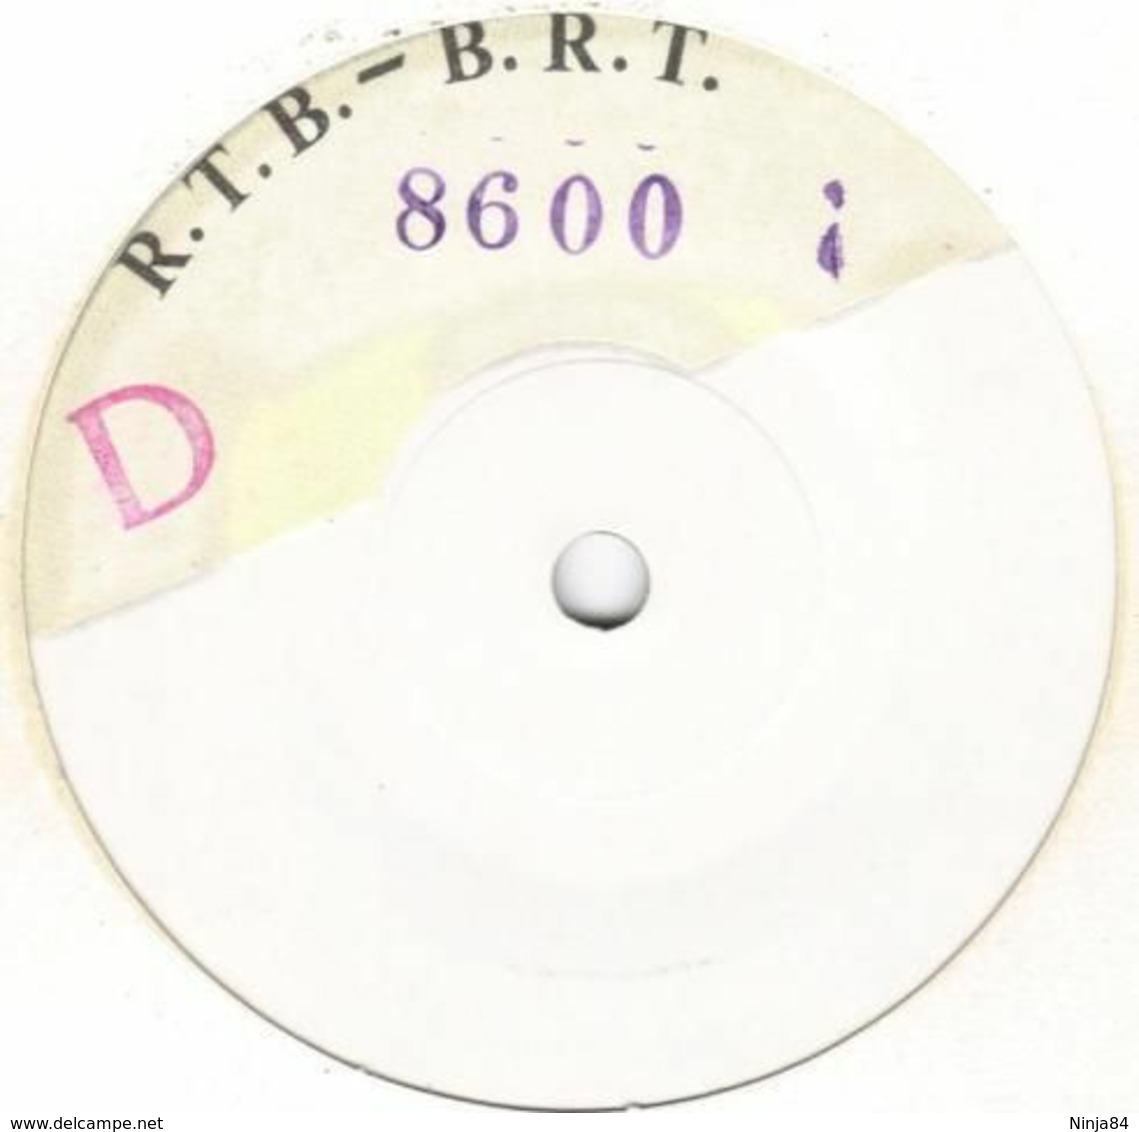 SP 45 RPM (7")  Pierrette Bruno  "  Non  "  Test Pressing - Collector's Editions